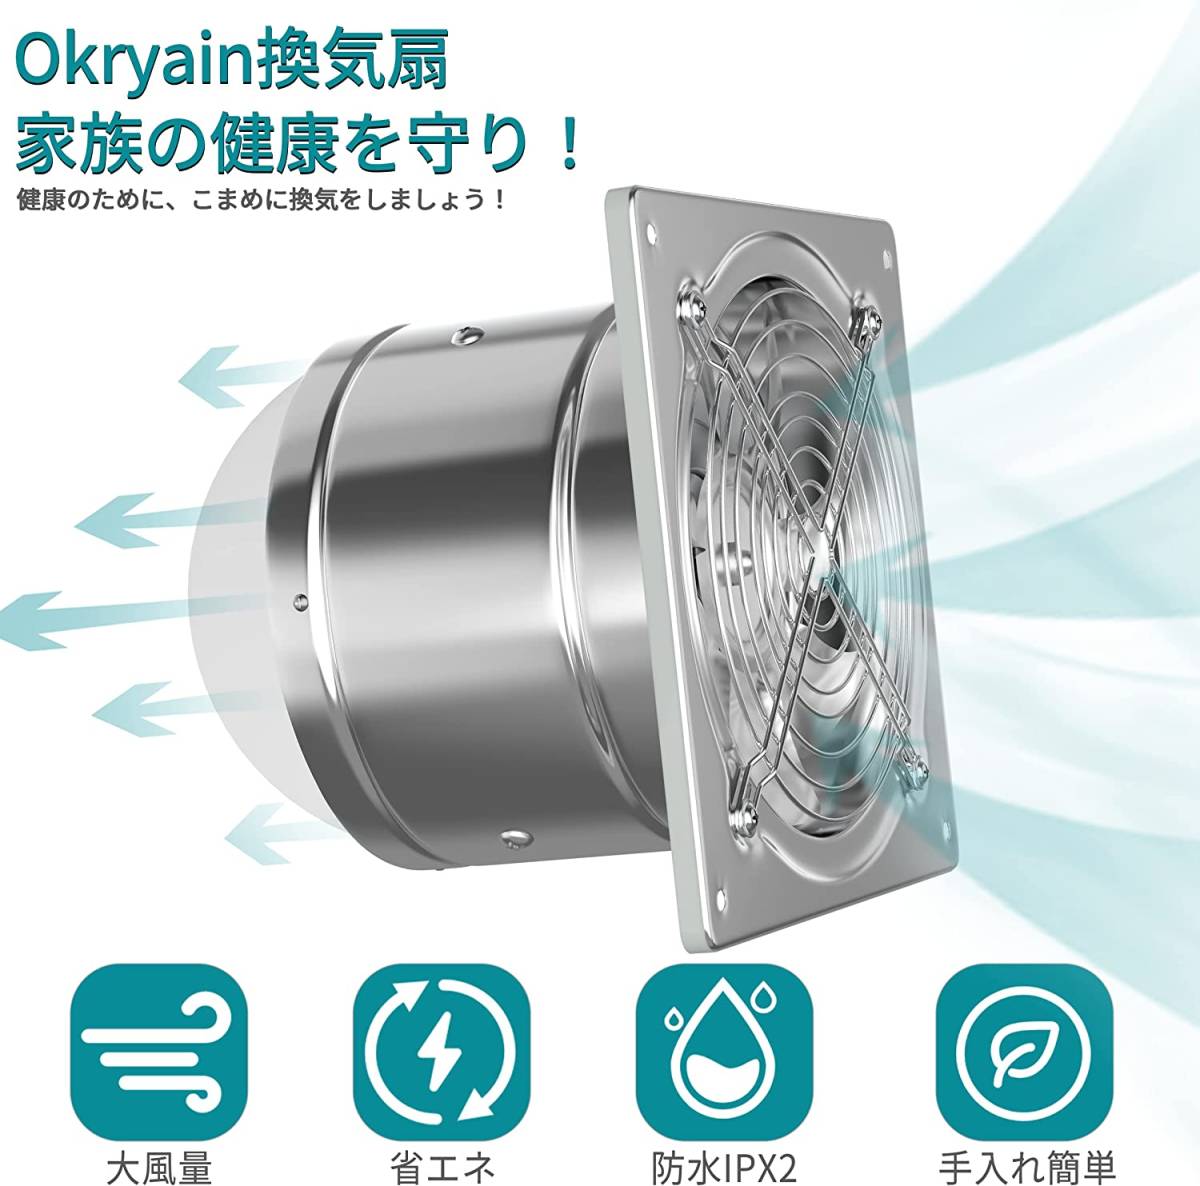  silver -150mm Okryain exhaust fan 150mm home use industry exhaust fan air flow 525m/h interim installation shape duct fan business use exhaust fan large 